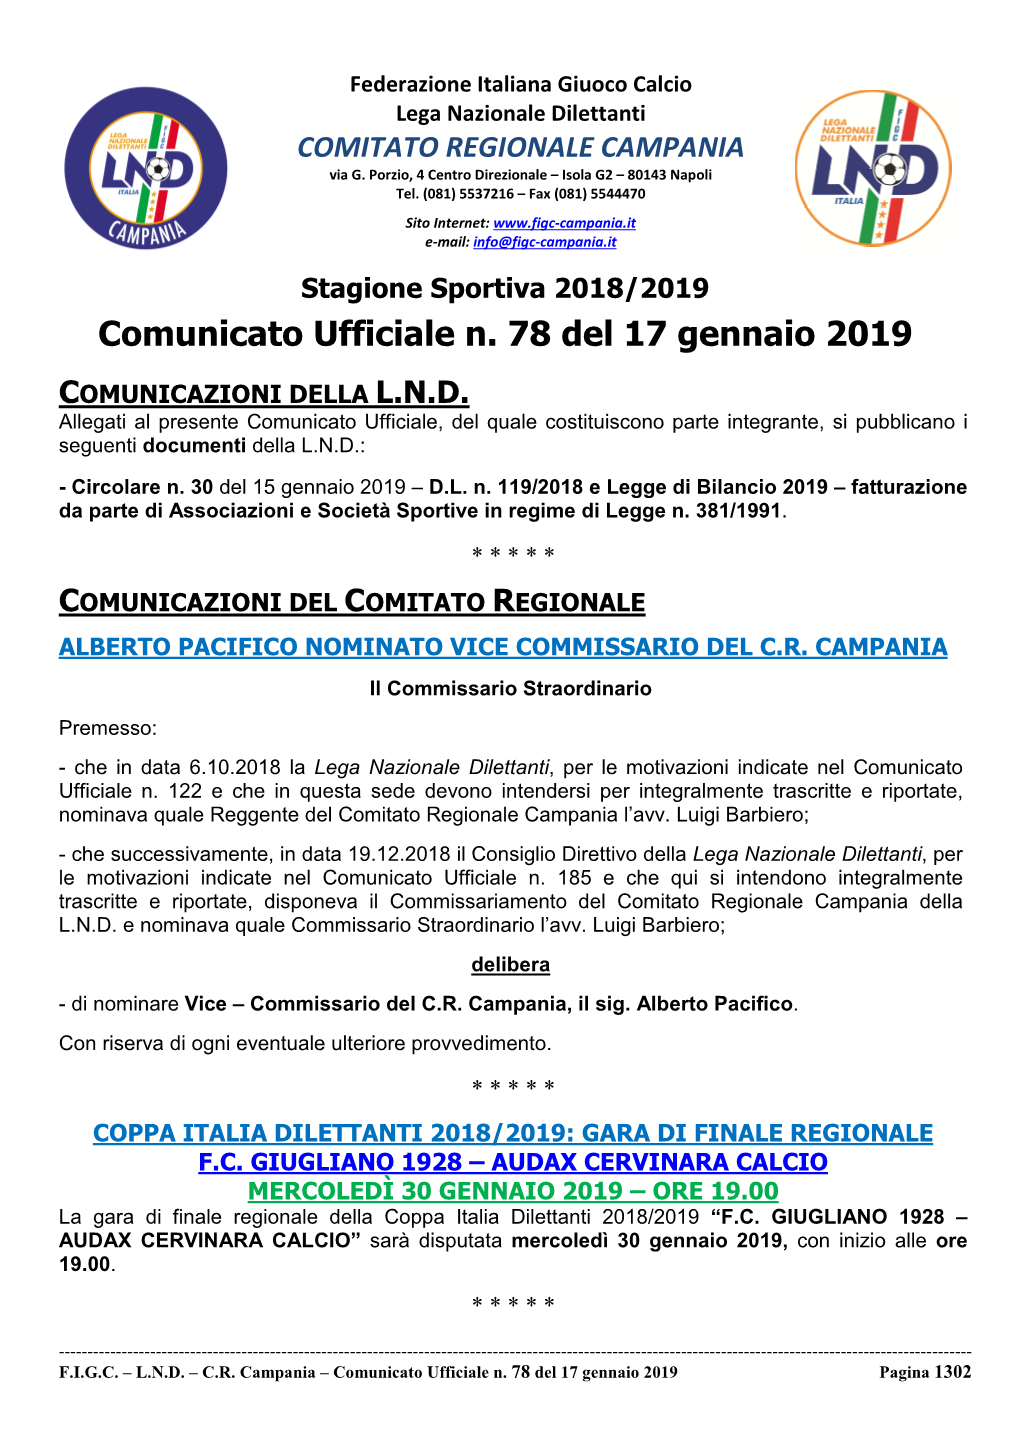 Comunicato Ufficiale N. 78 Del 17 Gennaio 2019